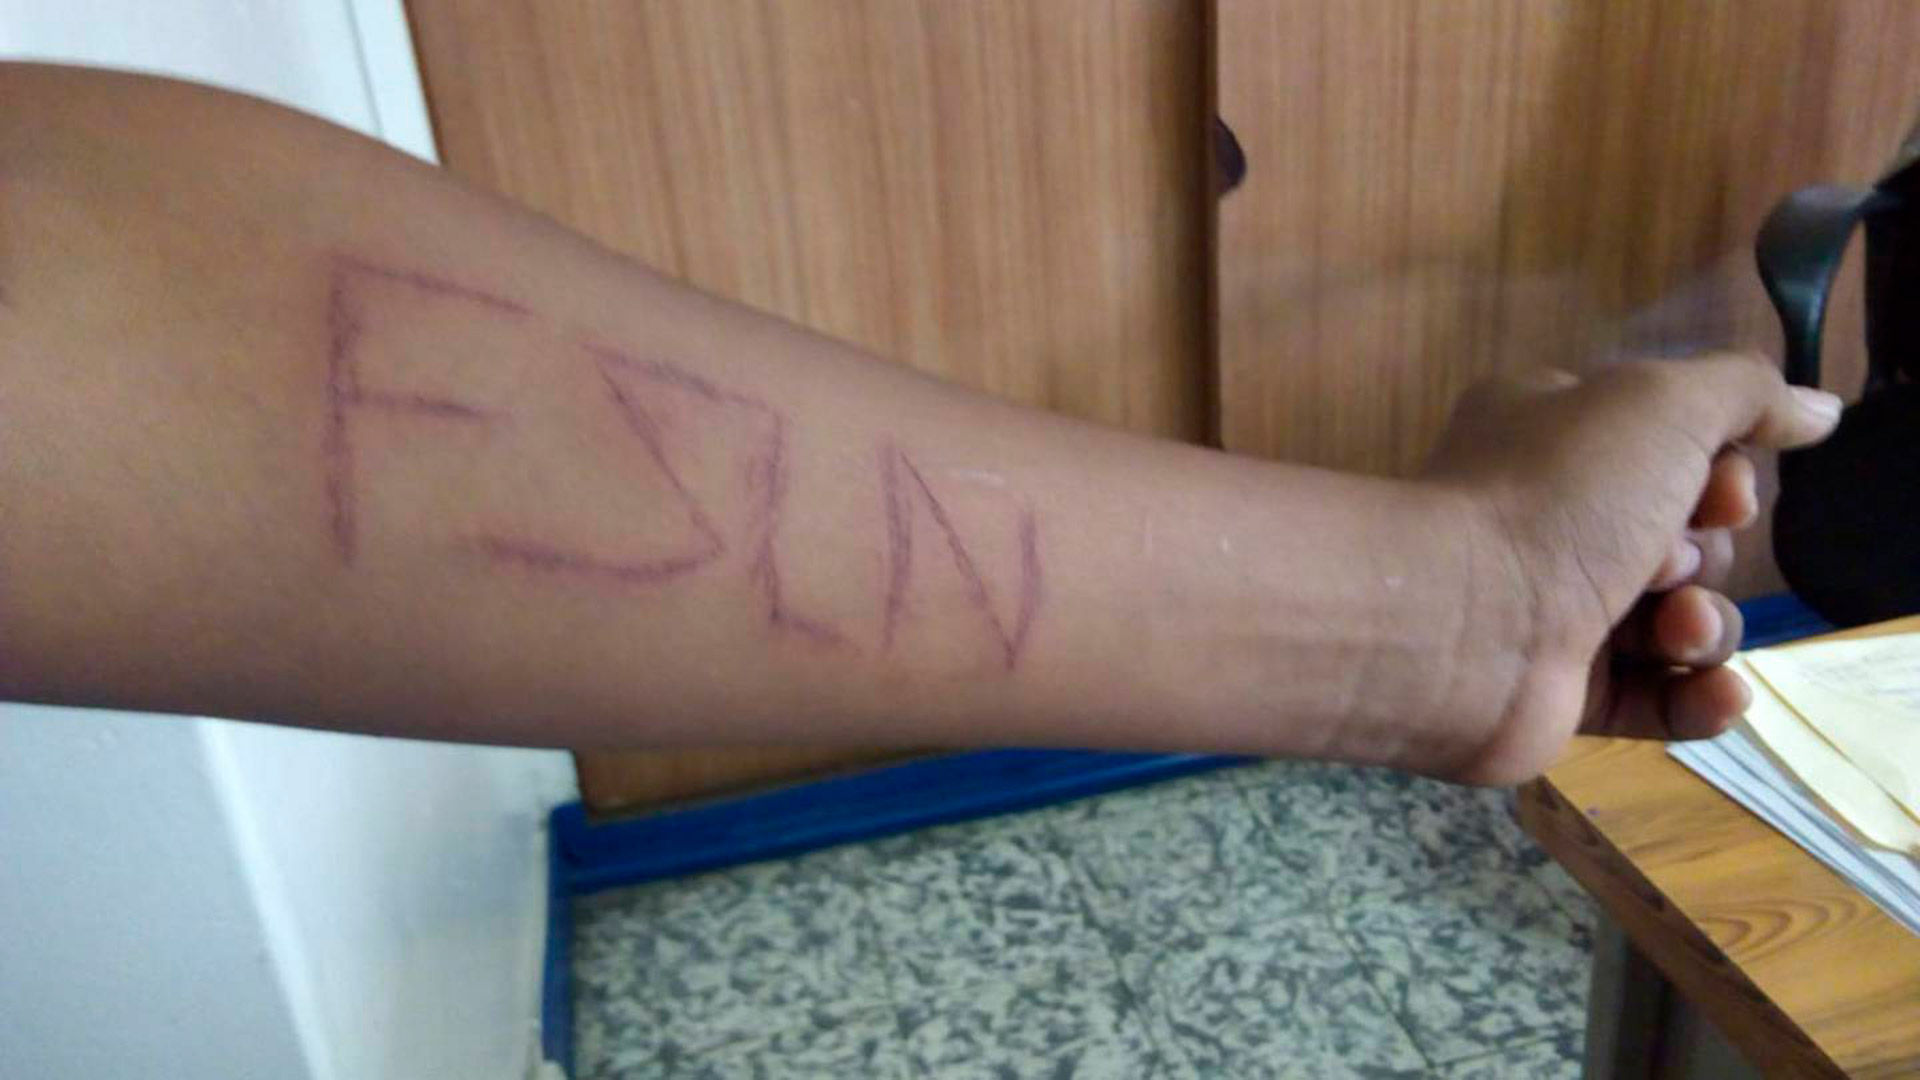 Un adolescente fue detenido por policías cuando iba  camino al colegio. Le tatuaron en sangre las siglas del partido gobernante en Nicaragua. (Foto cortesía)